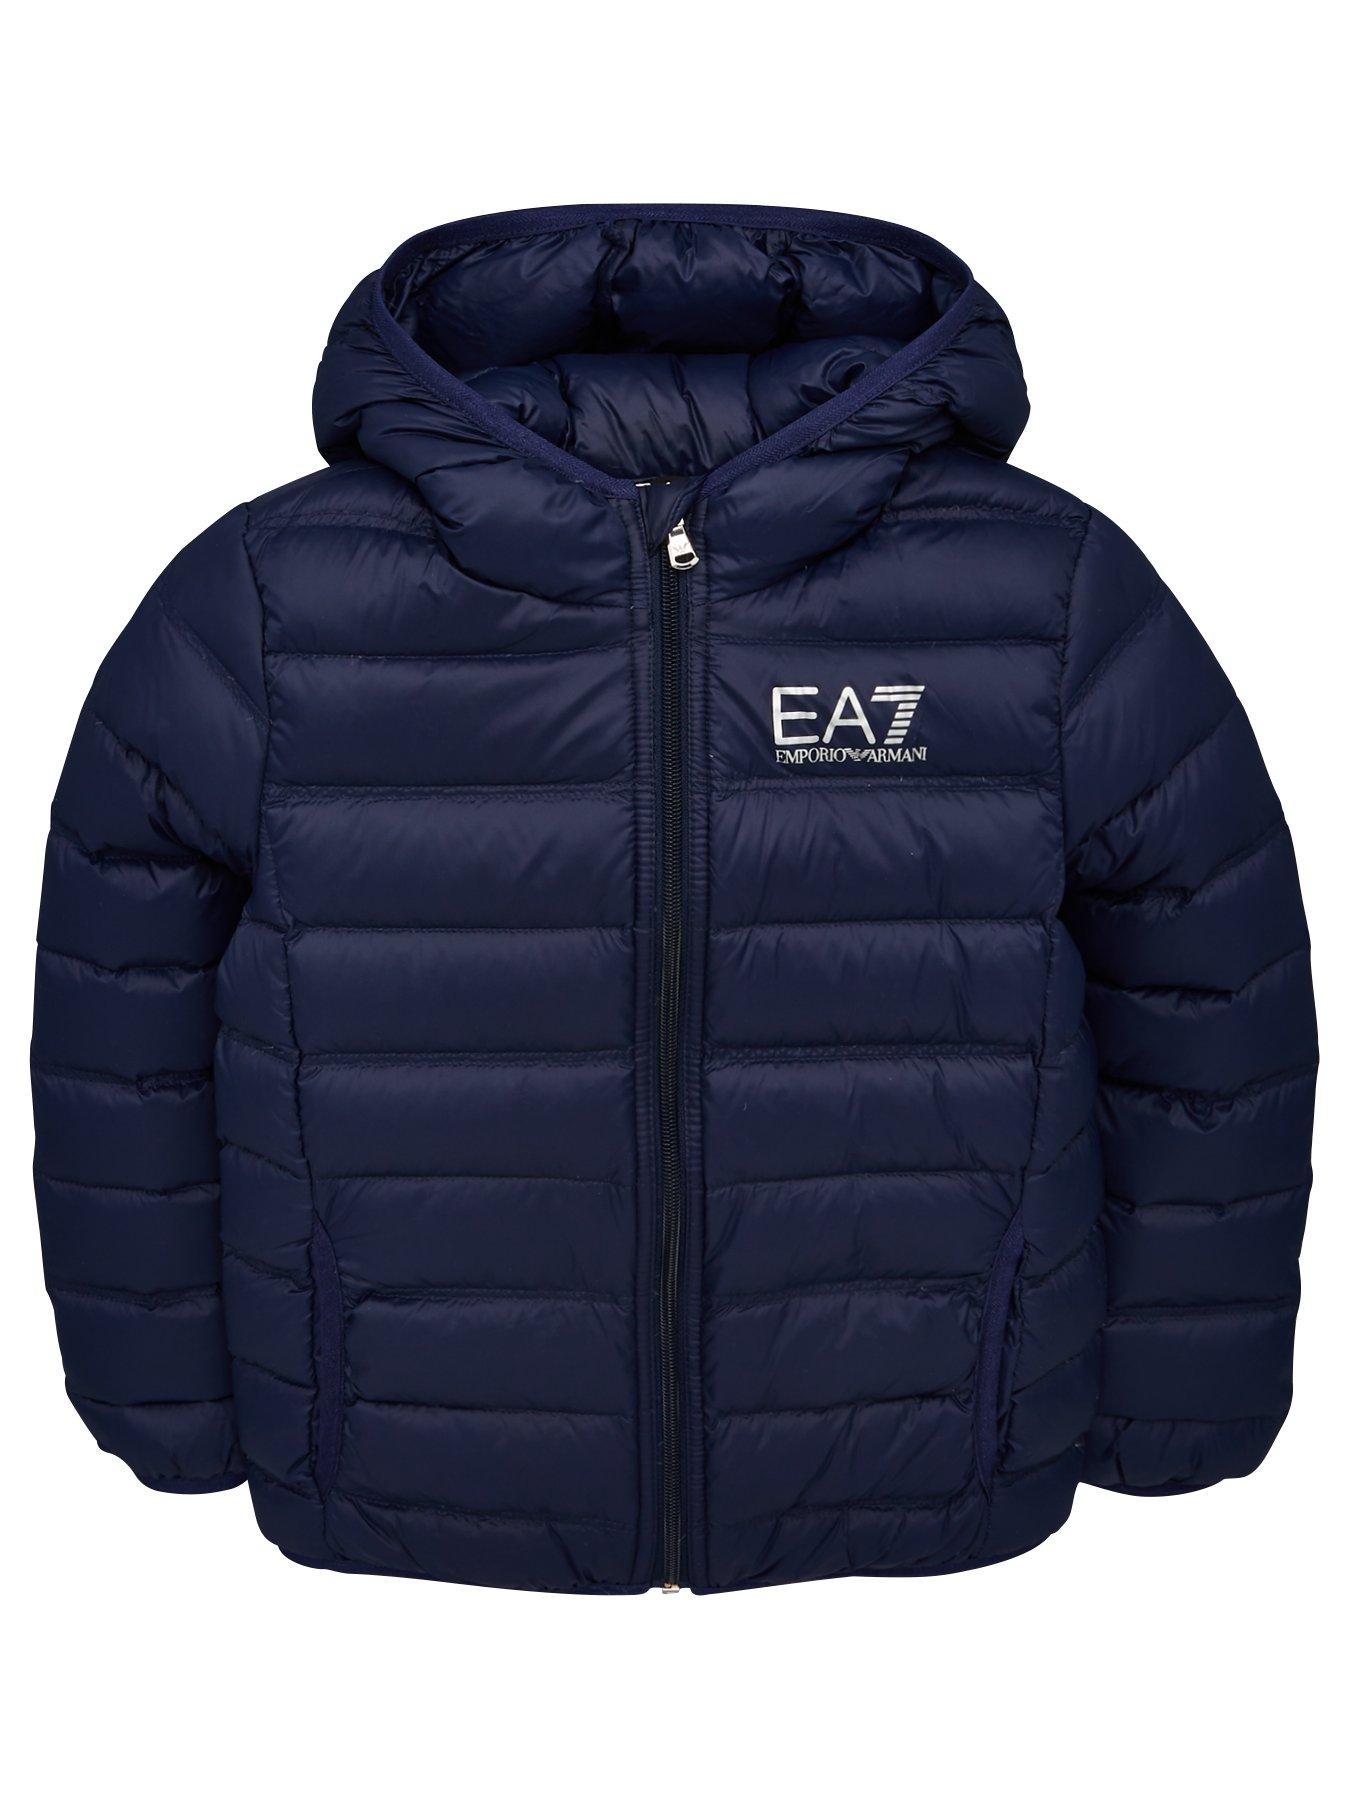 ea7 emporio armani quilted jacket blue